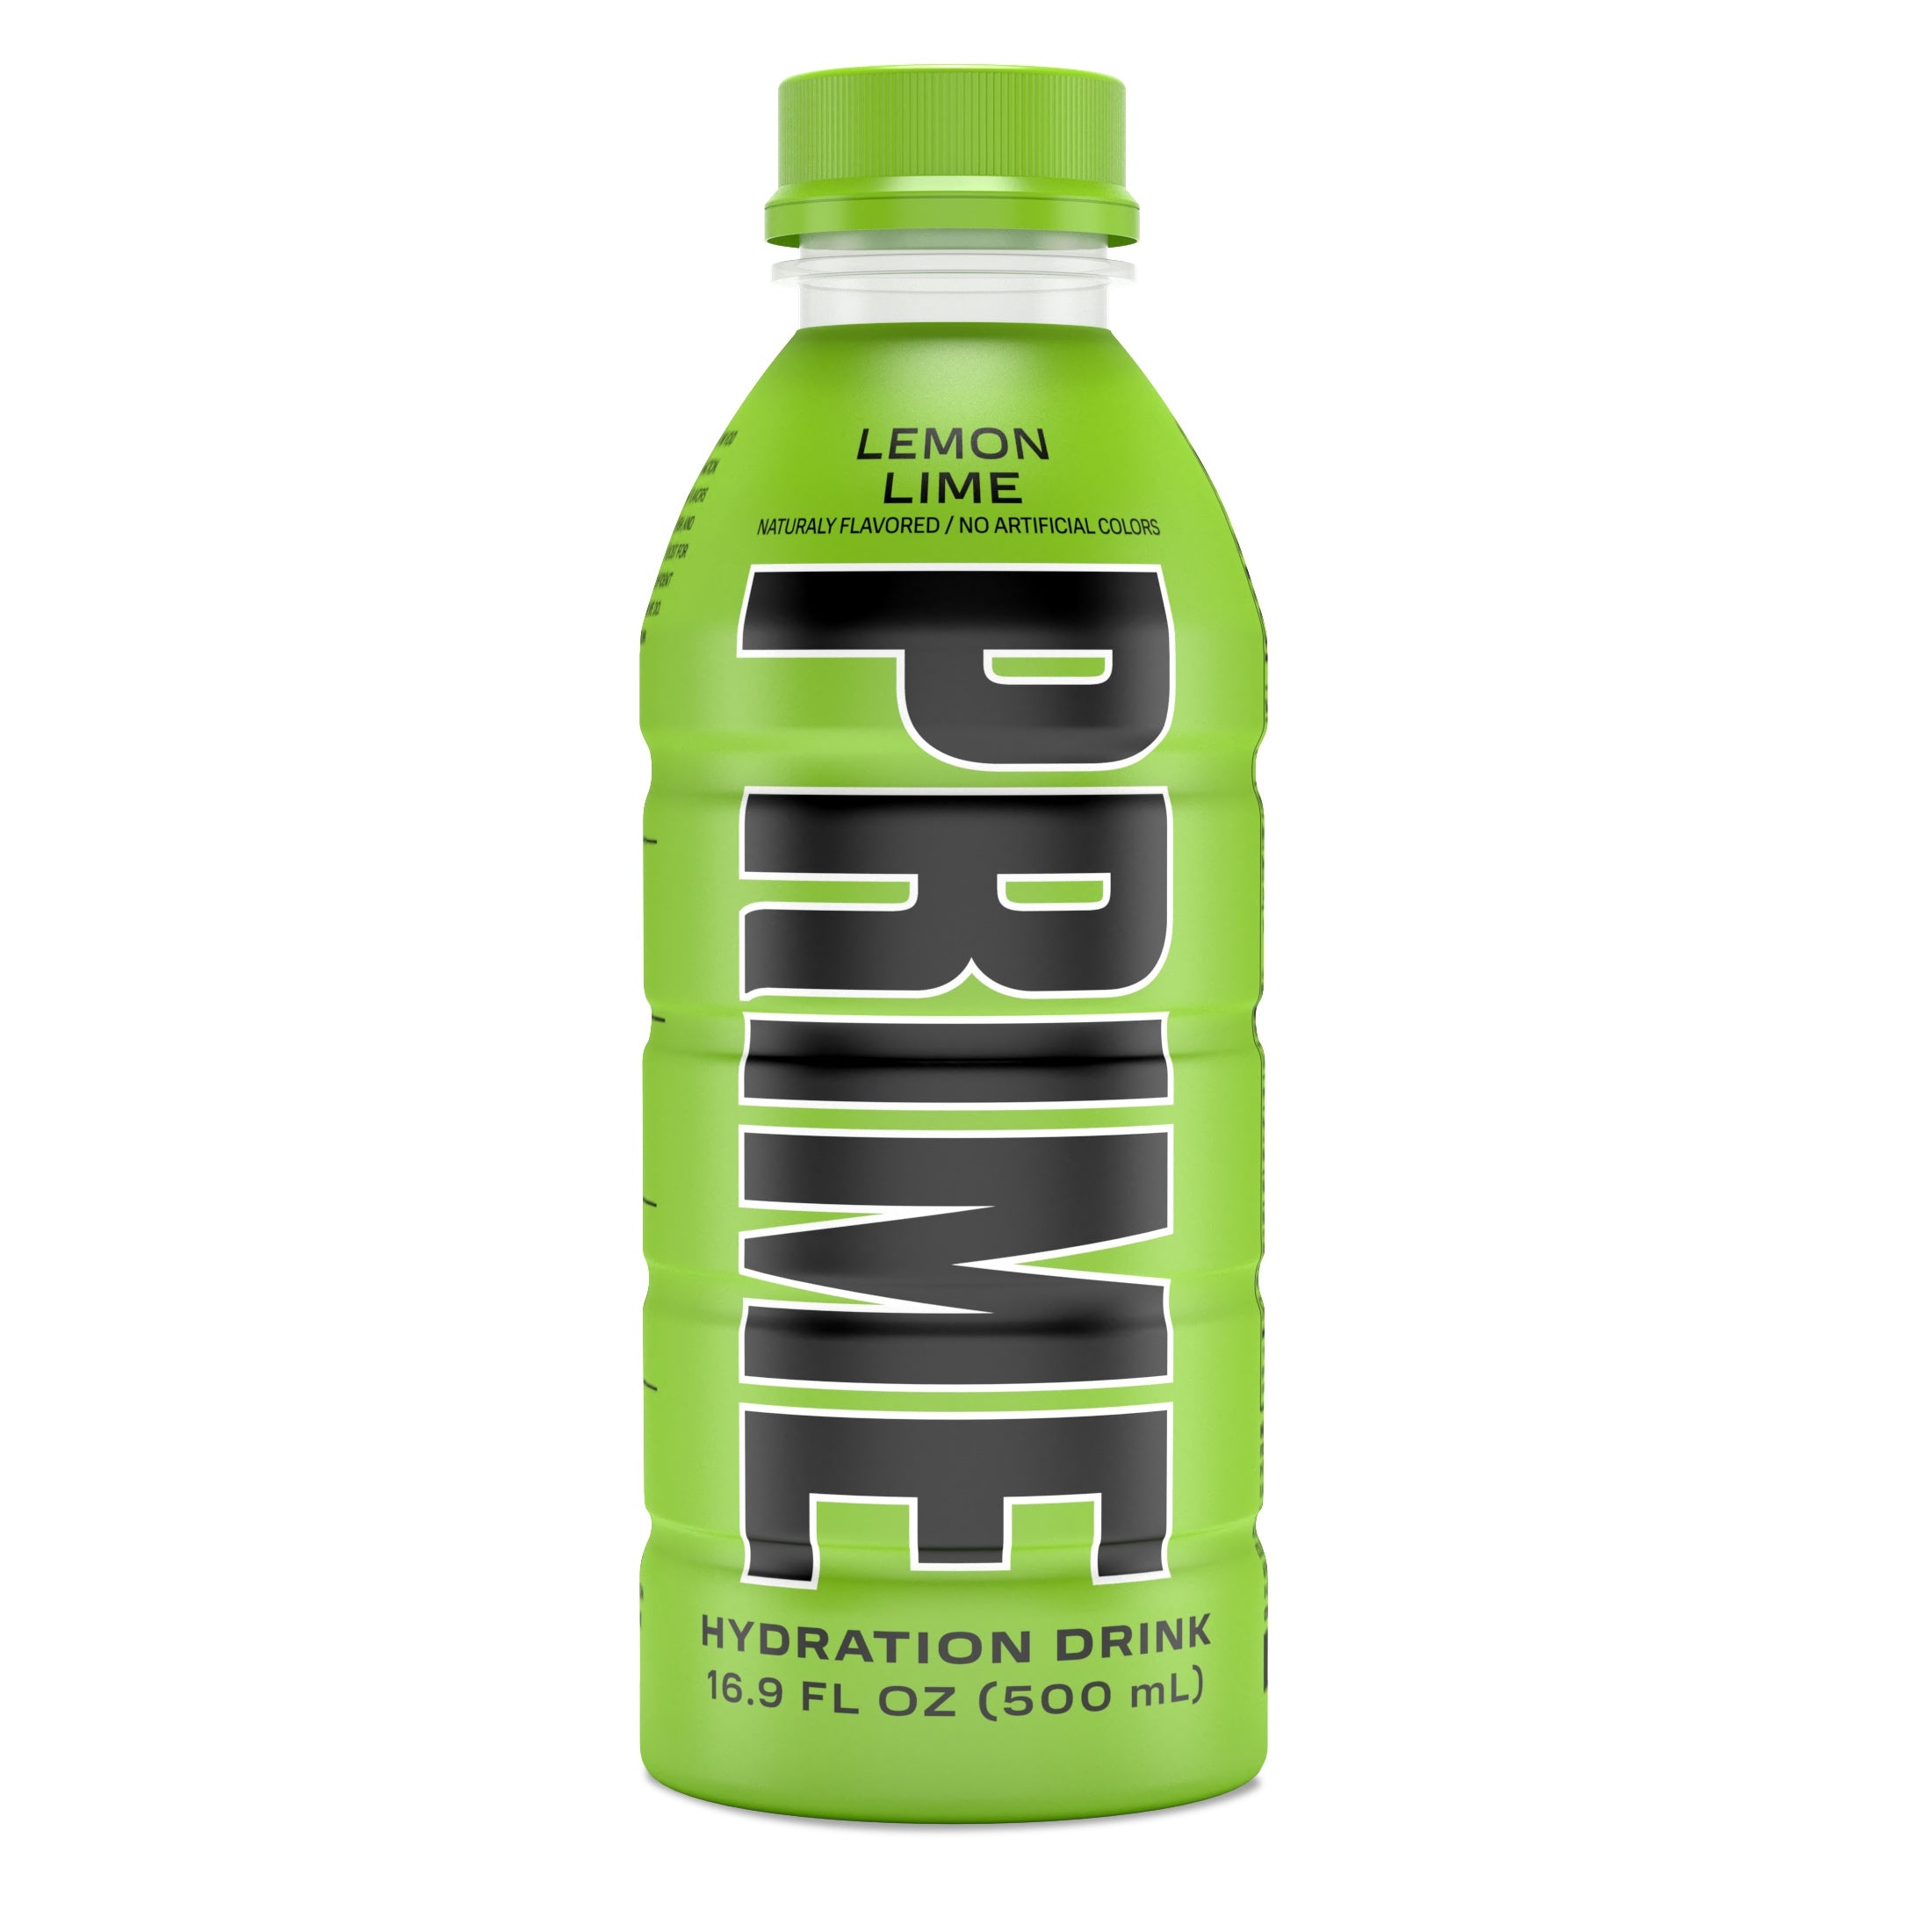 Prime Hydration Drink, Lemon Lime, 16.9 fl oz, Single Bottle - image 1 of 3